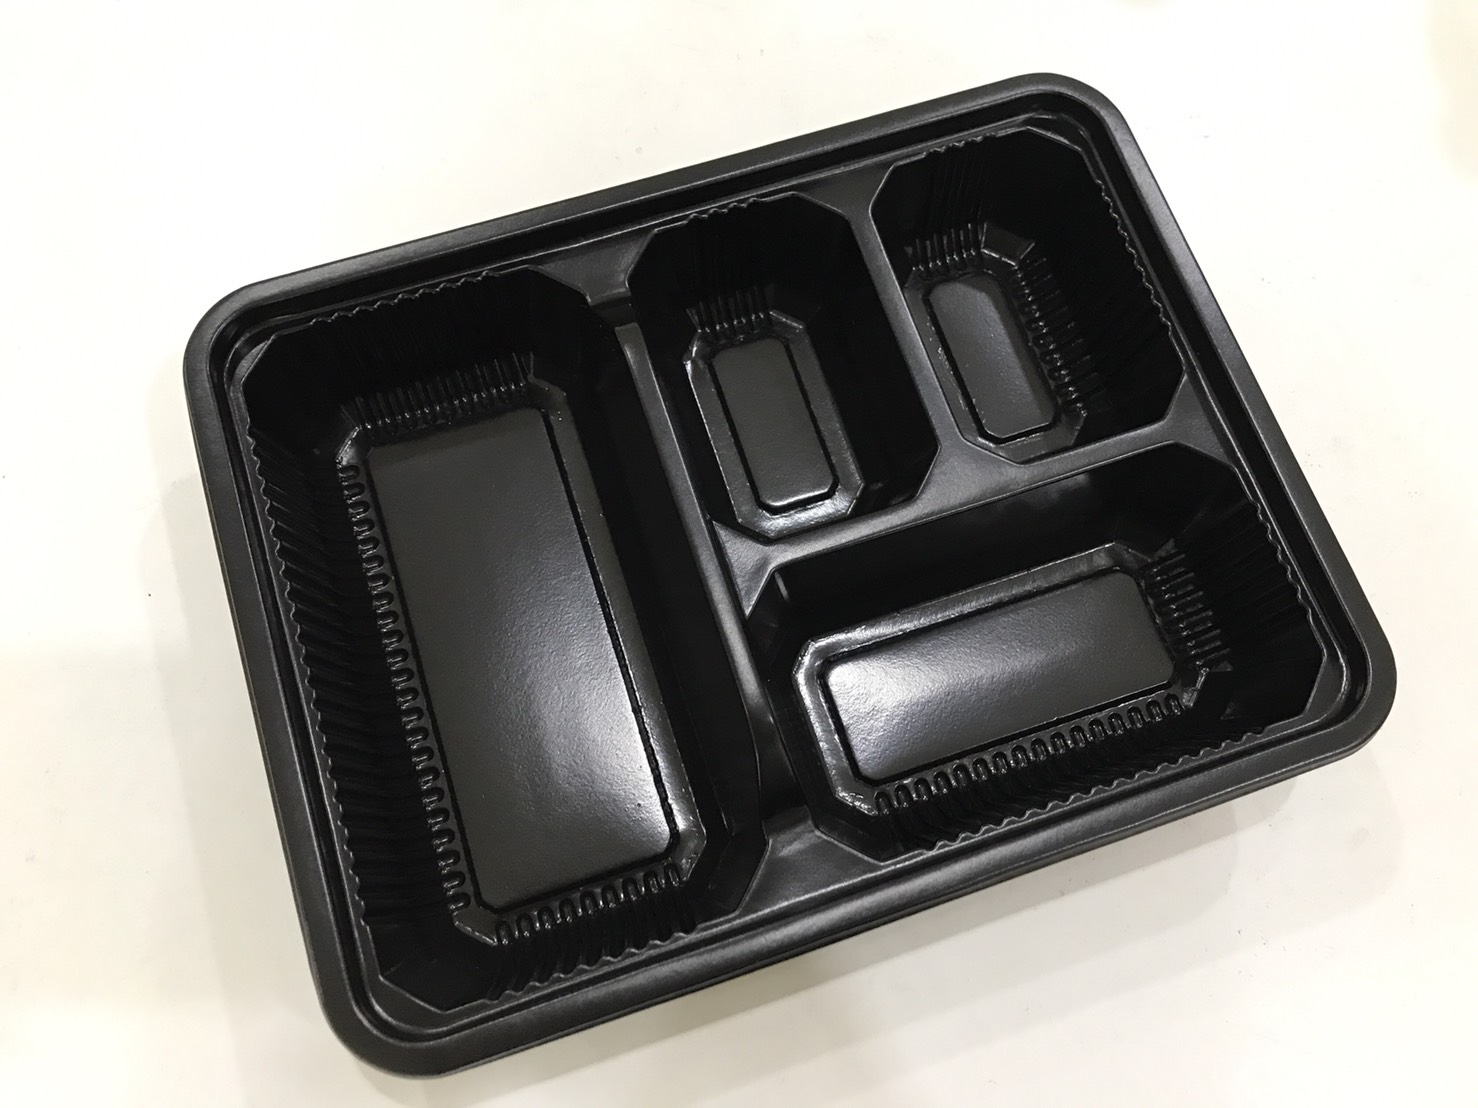 กล่องอาหารพลาสติก ฐานดำ 4 หลุม ฝาใส S-Bento 4-02 อบไมโครเวฟได้